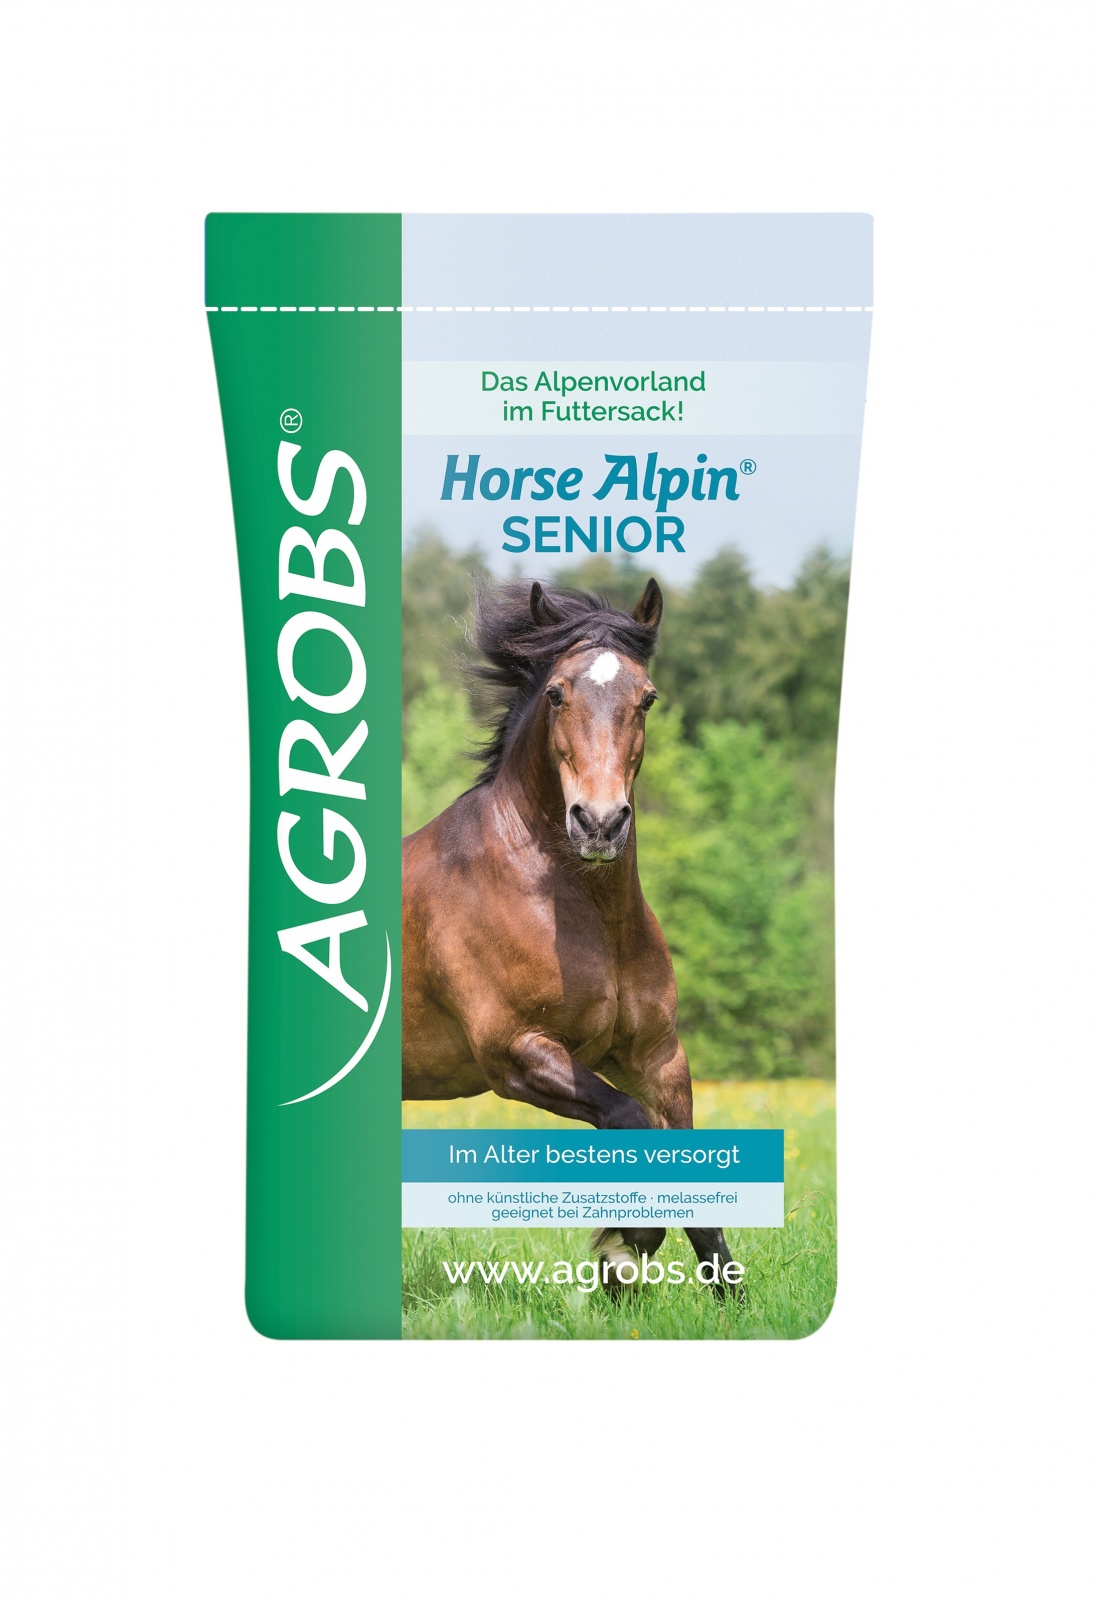 Agrobs - Horse Alpin Senior - mit Myoalpin®-Fasern - zur Versorgung von Pferdesenioren